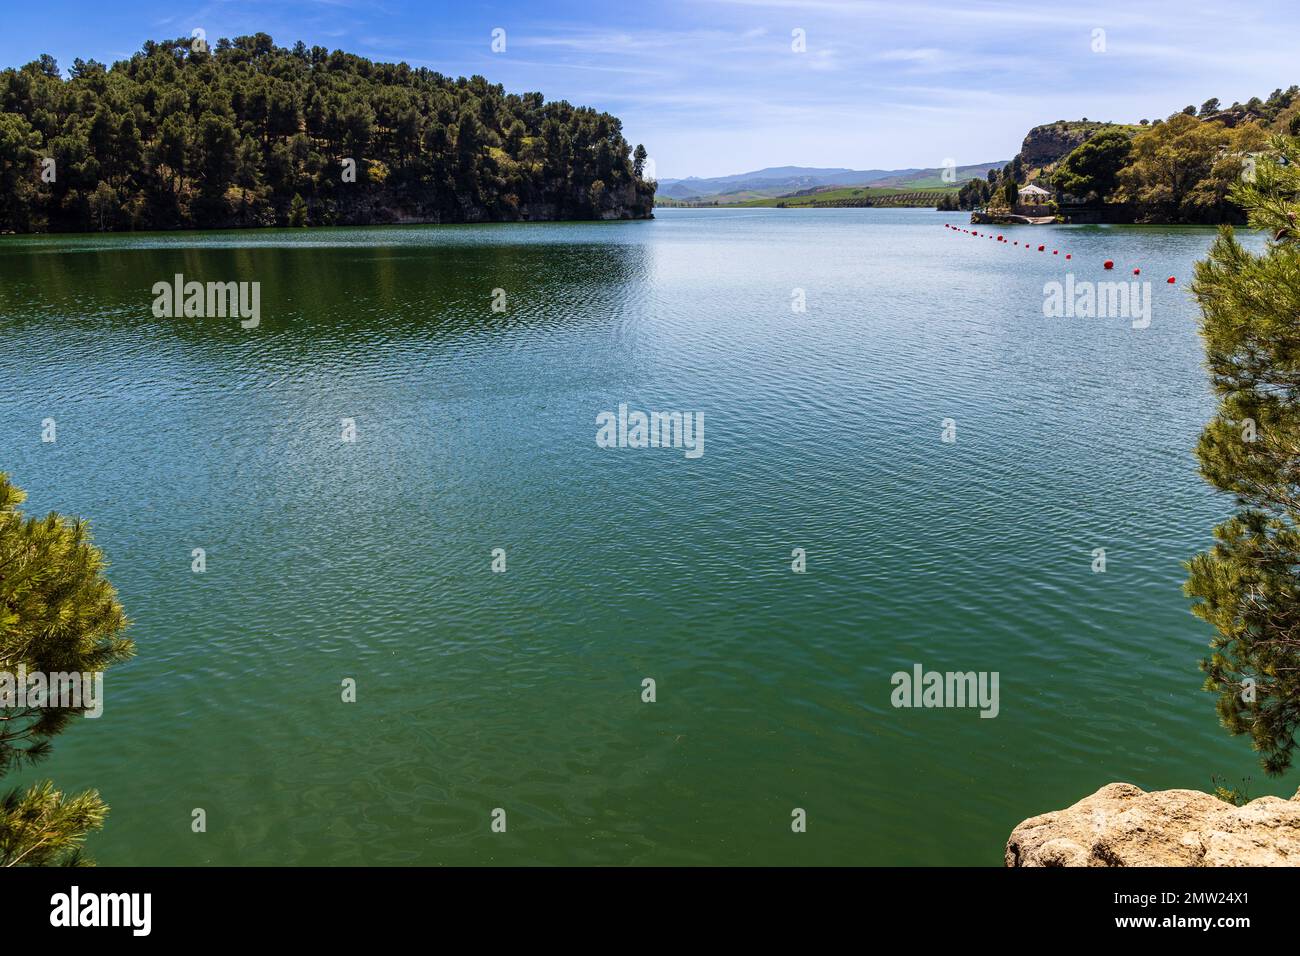 Embalse del Conde de Guadalhorce serbatoio, lago artificiale in un parco naturale. Parque Natural de Ardales, provincia di Malaga, Andalusia, Spagna. Foto Stock